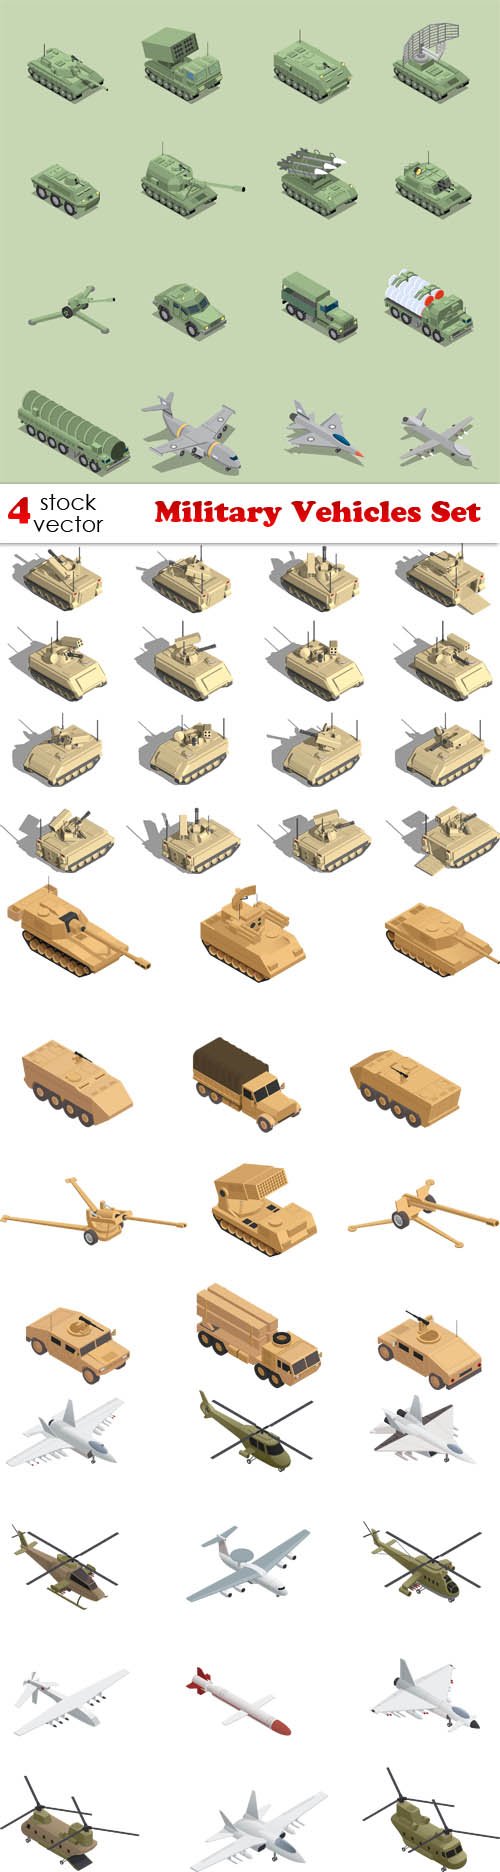 Vectors - Military Vehicles Set